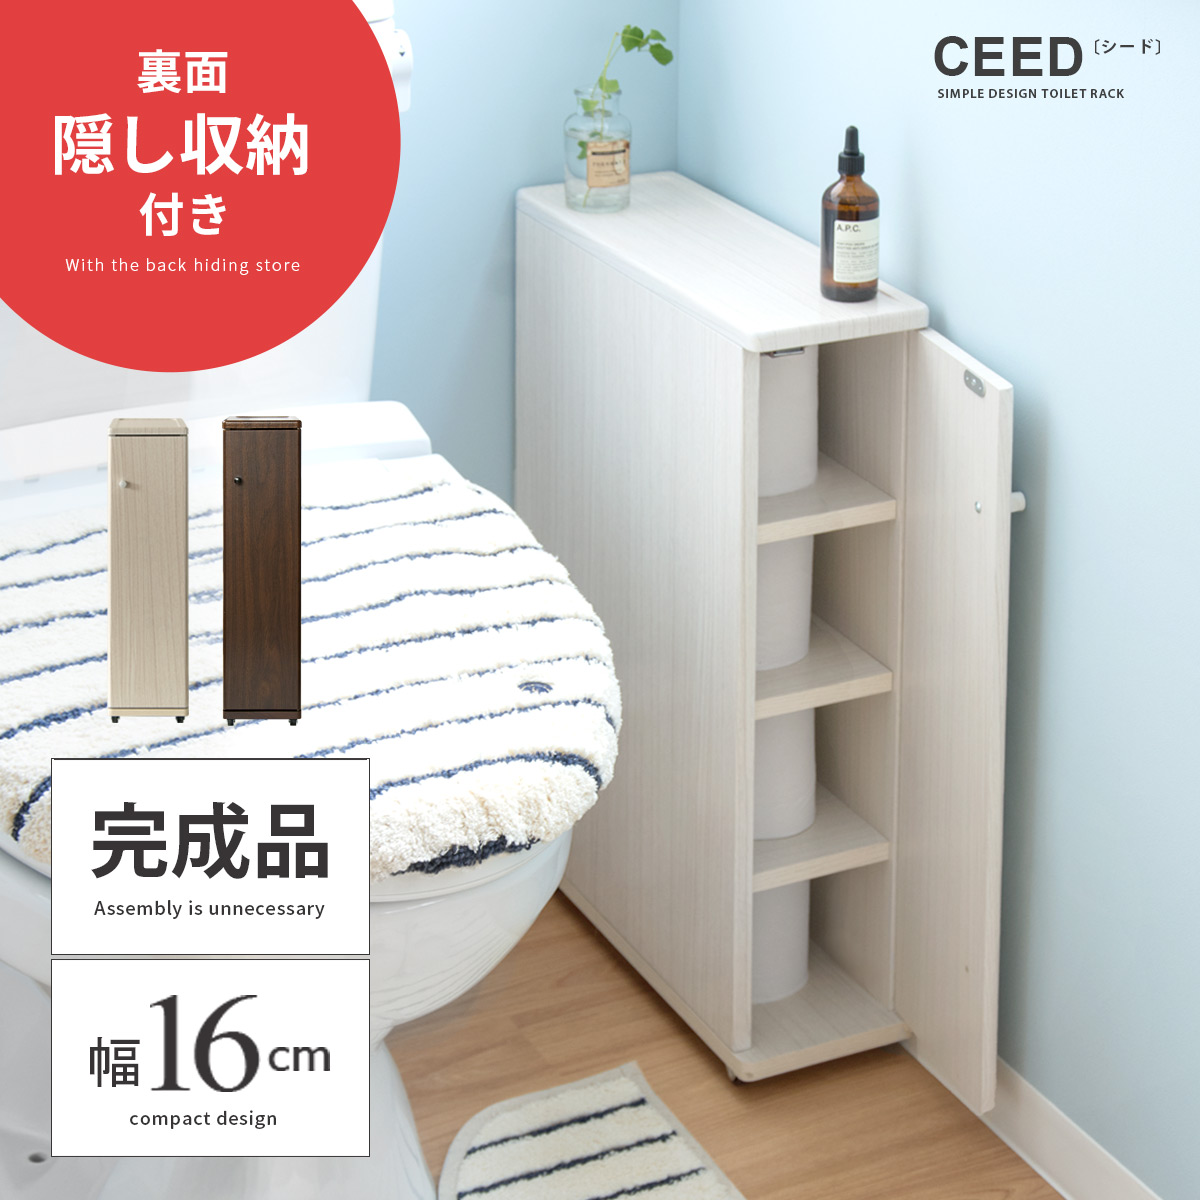 トイレラック CEED(シード) 【公式】 エア・リゾーム インテリア・家具通販